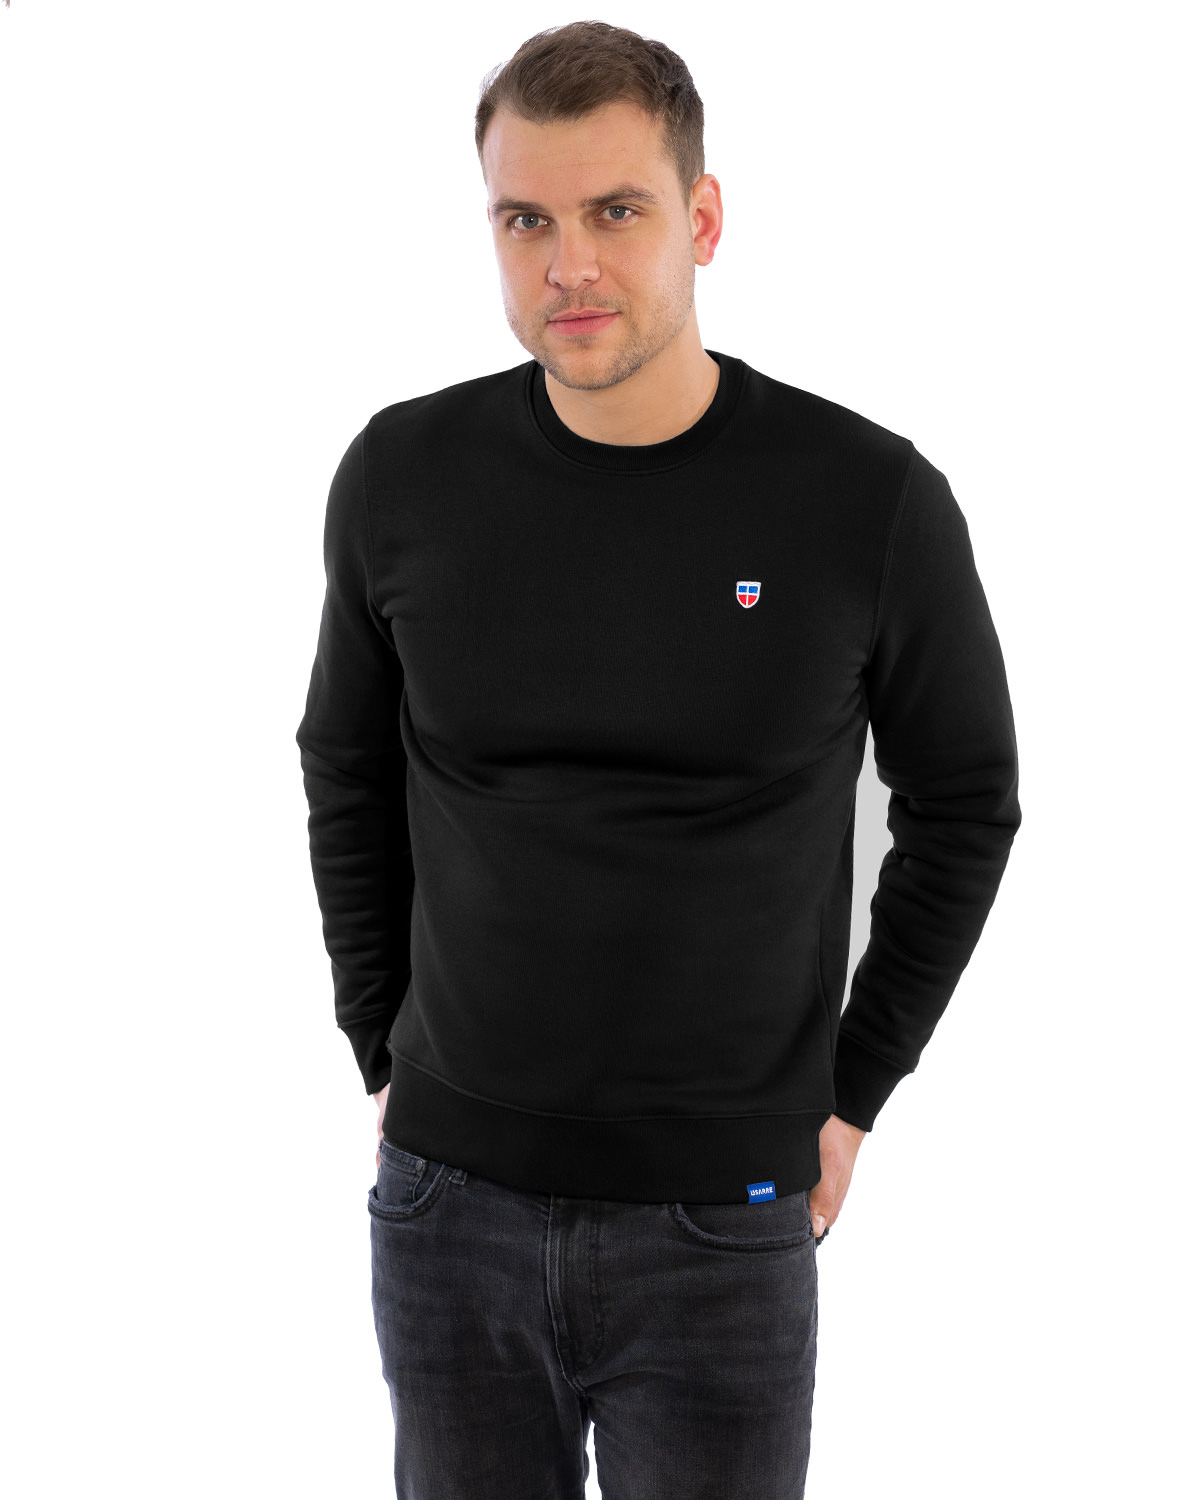 Auf dem Bild zusehen ist ein eleganter Sweater in schwarz. Der Sweater ist schlicht geschnitten und hat vorne links auf der Brust das LASARRE-Logo. Unten am linken Saum ist ein blaues Schildchen mit der weißen Aufschrift LASARRE.